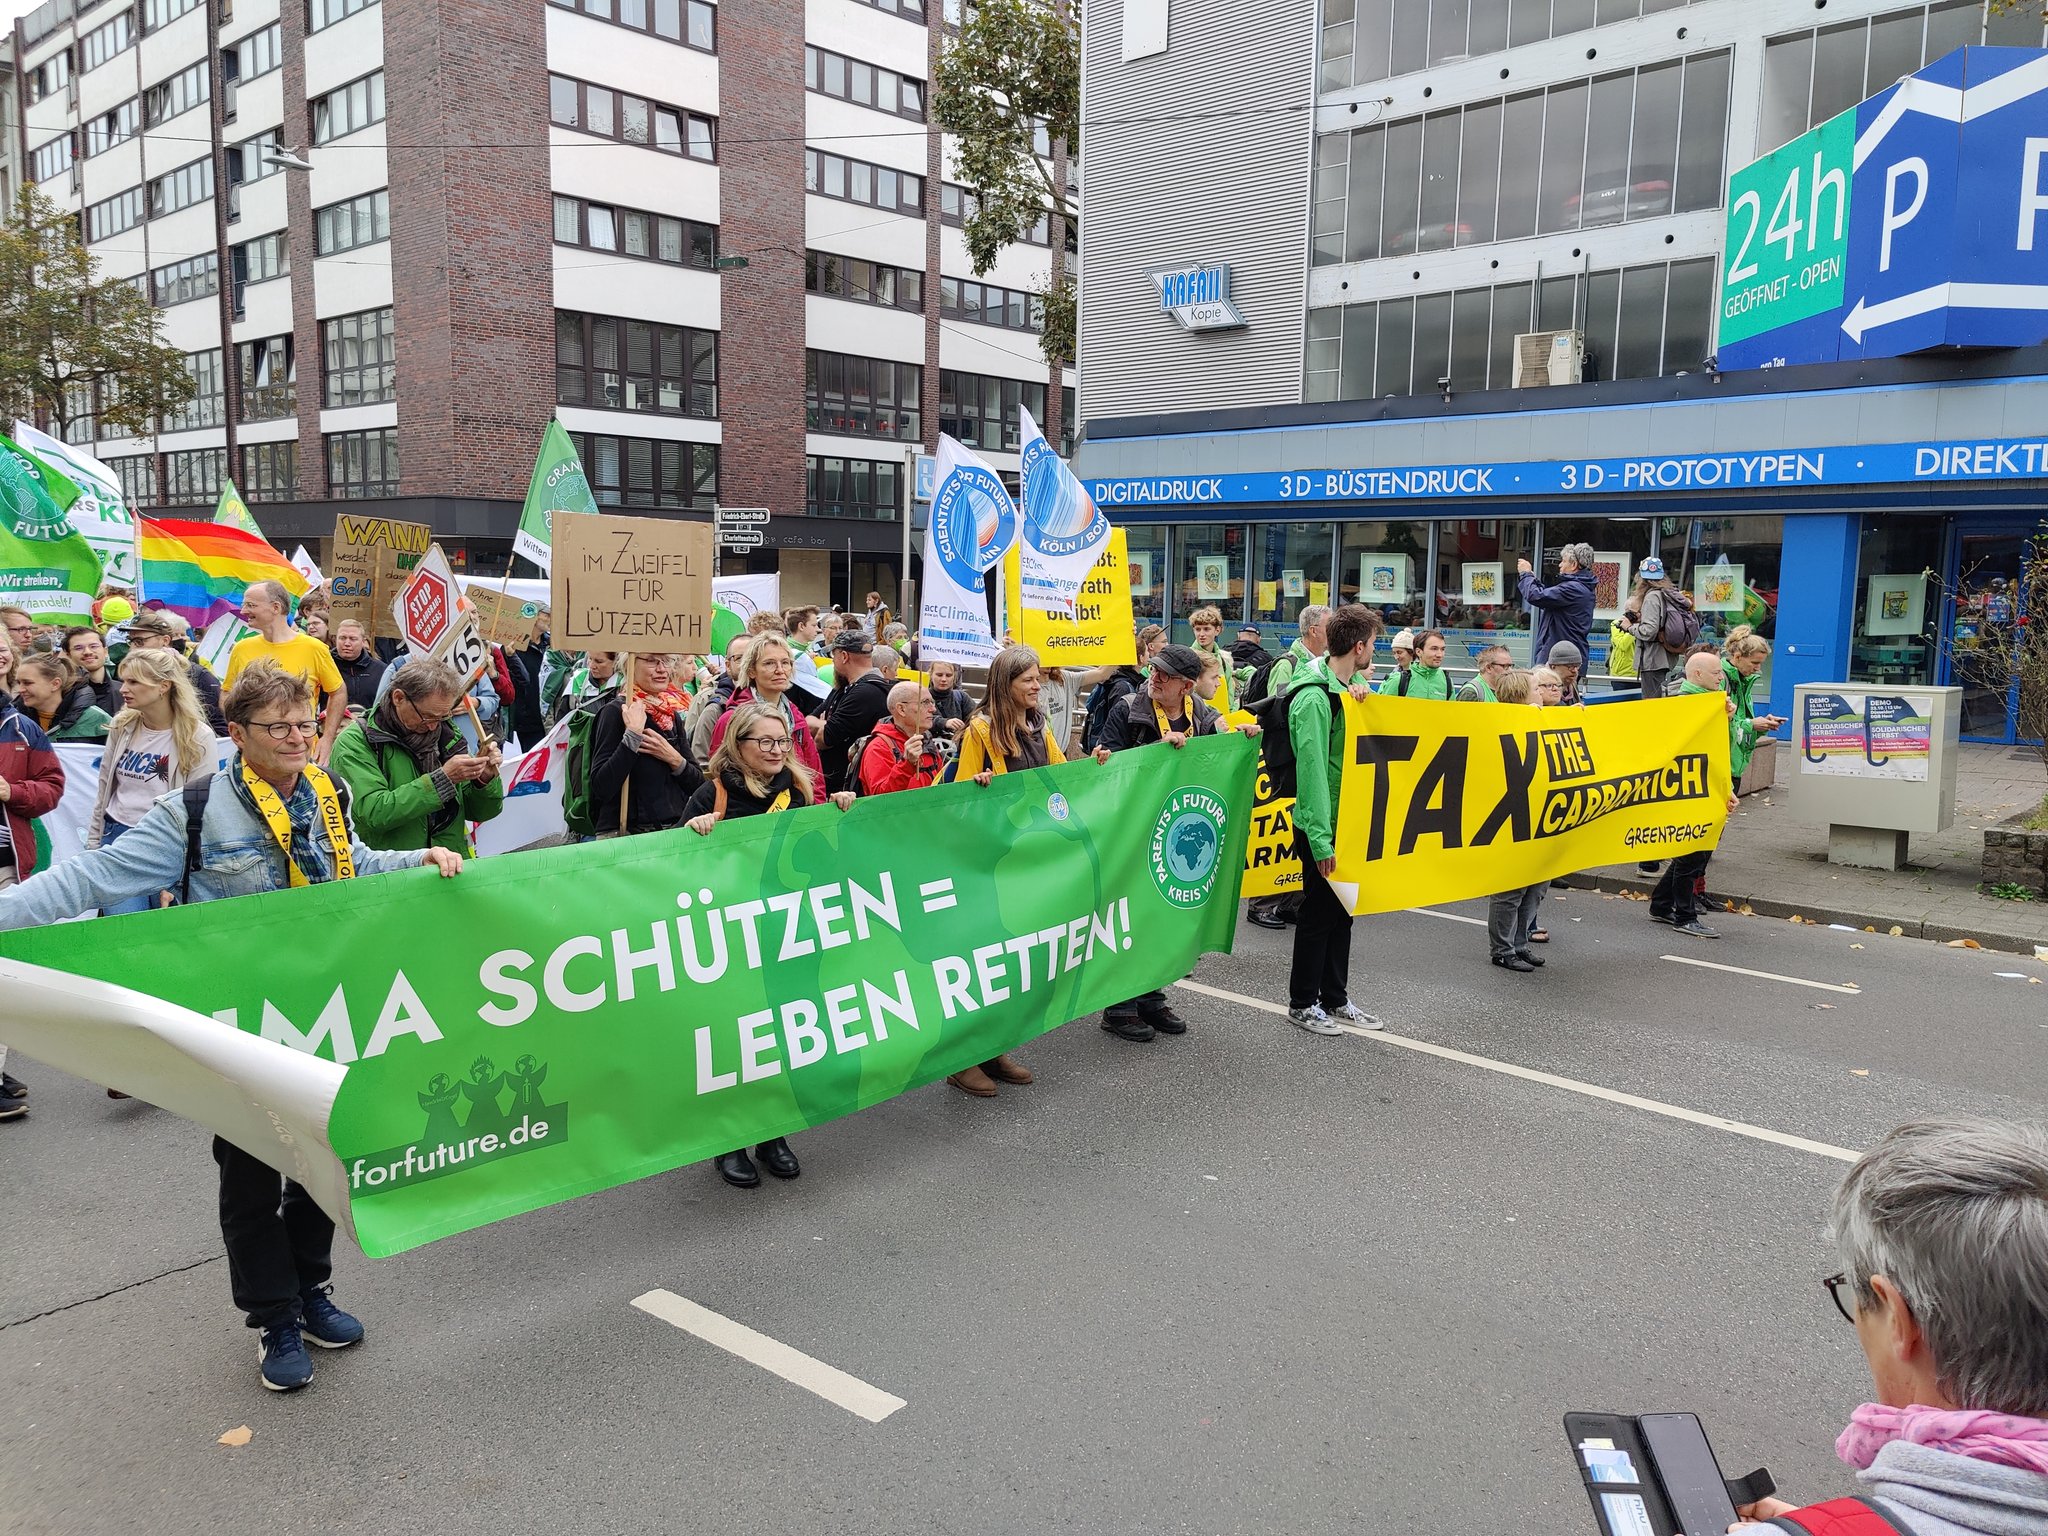 Miles de alemanes exigen reparto justo de fondos y energías verdes